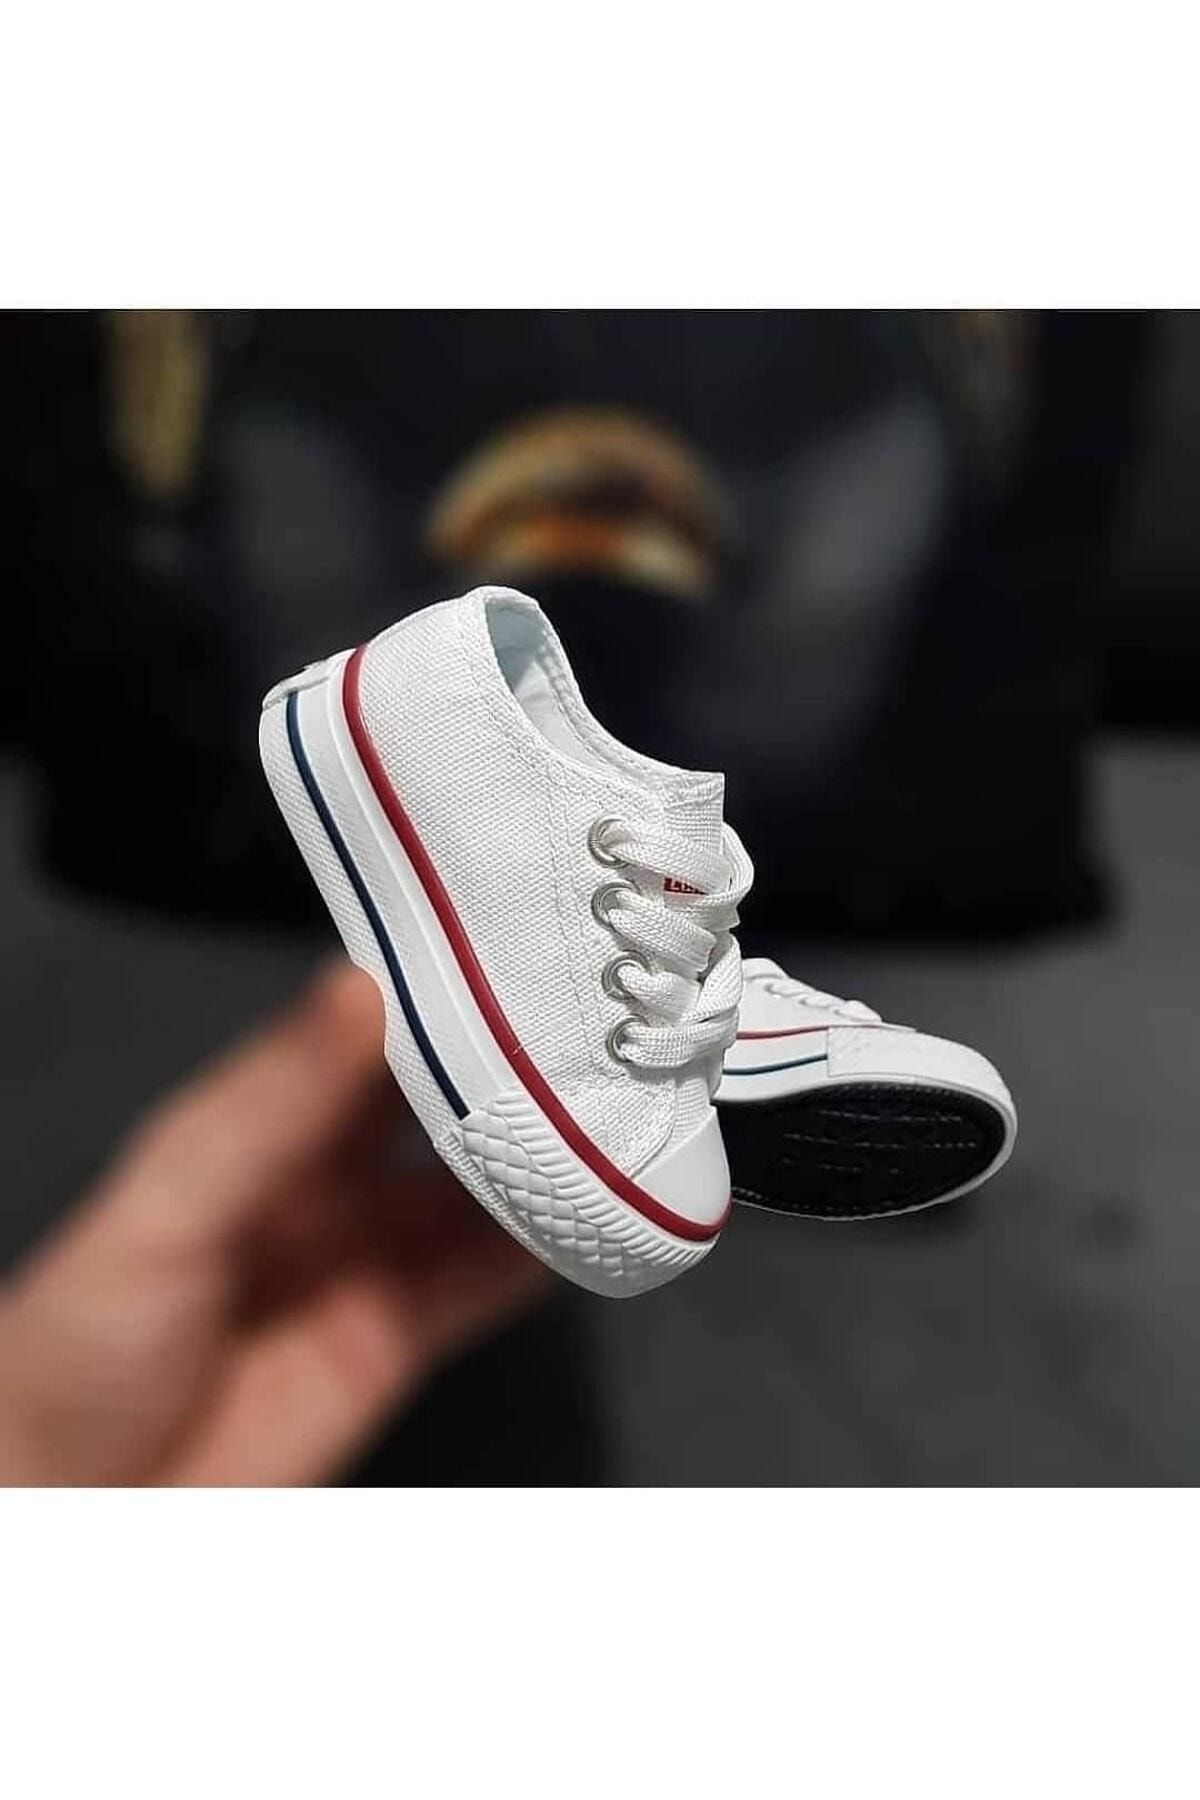 ebulduk Ünisex Beyaz Spor Sneaker Ayakkabı